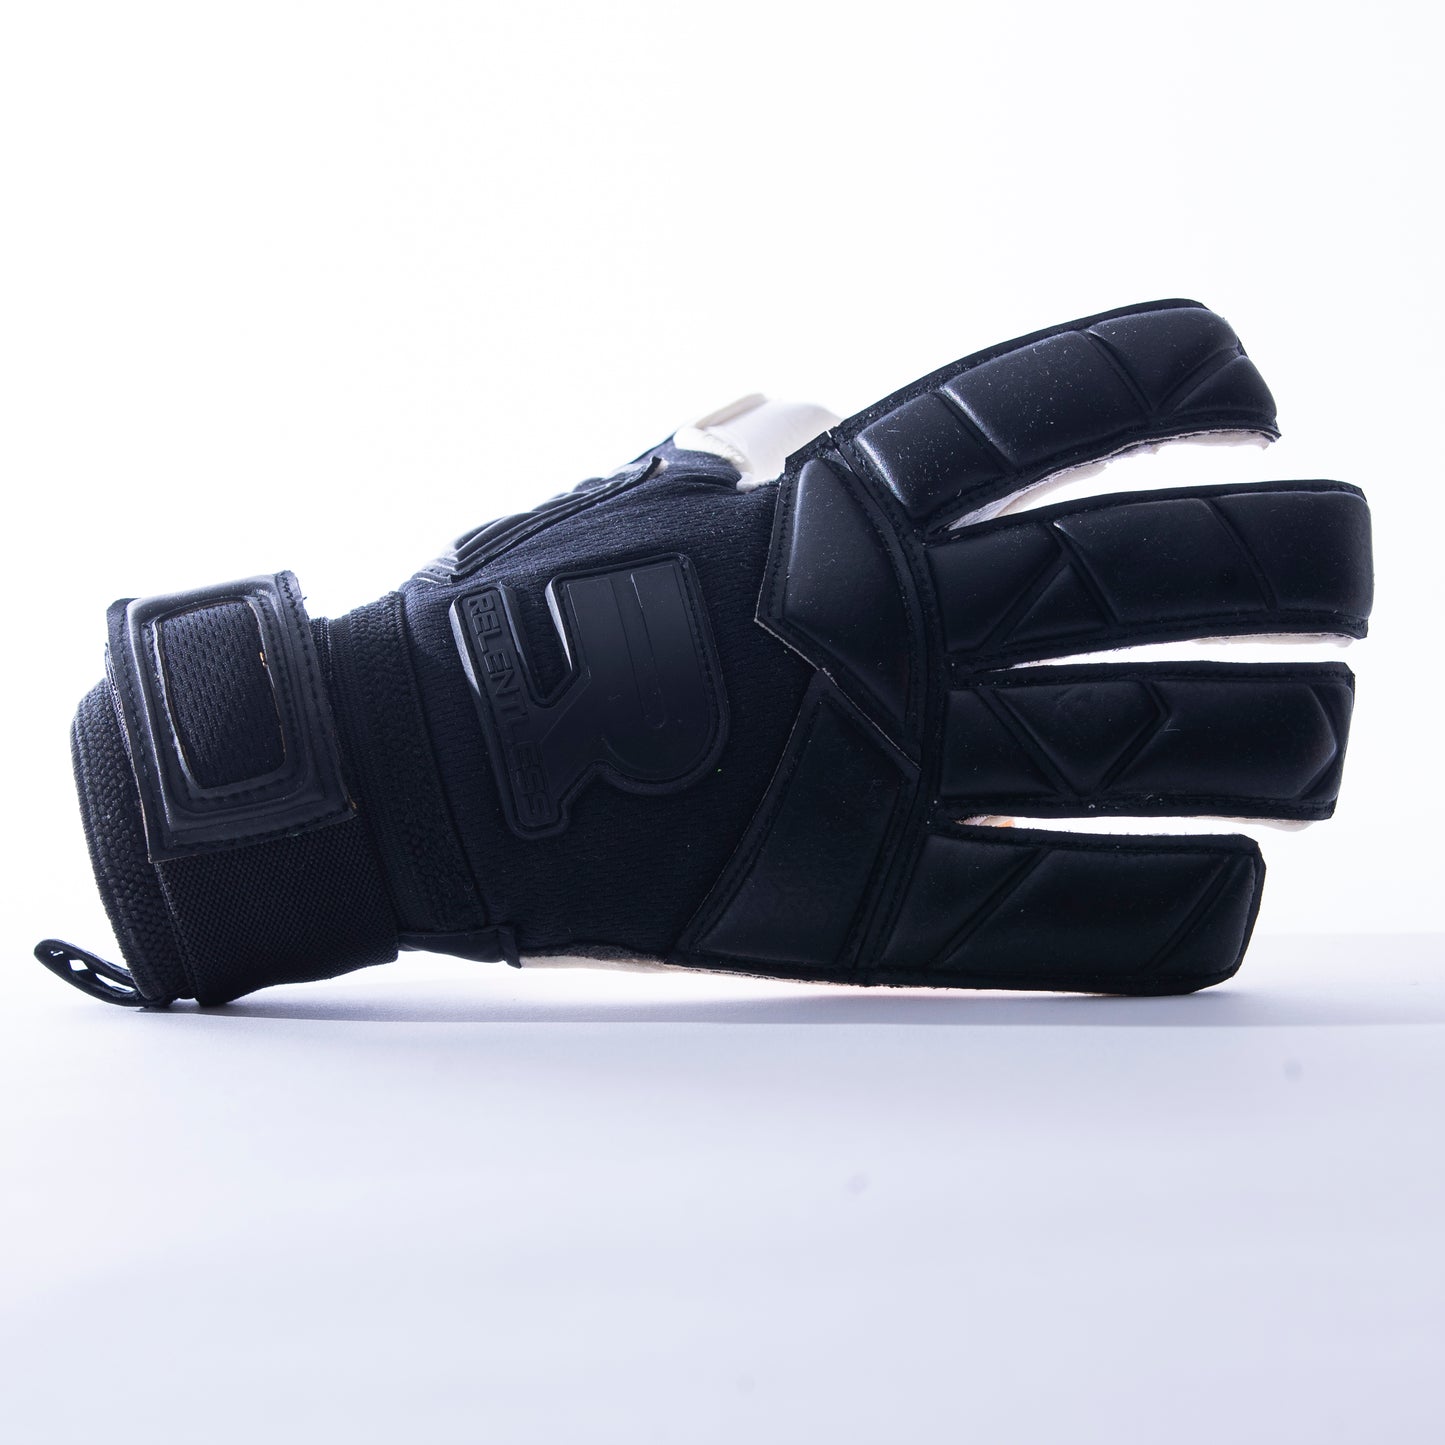 Black goalkeeper glove